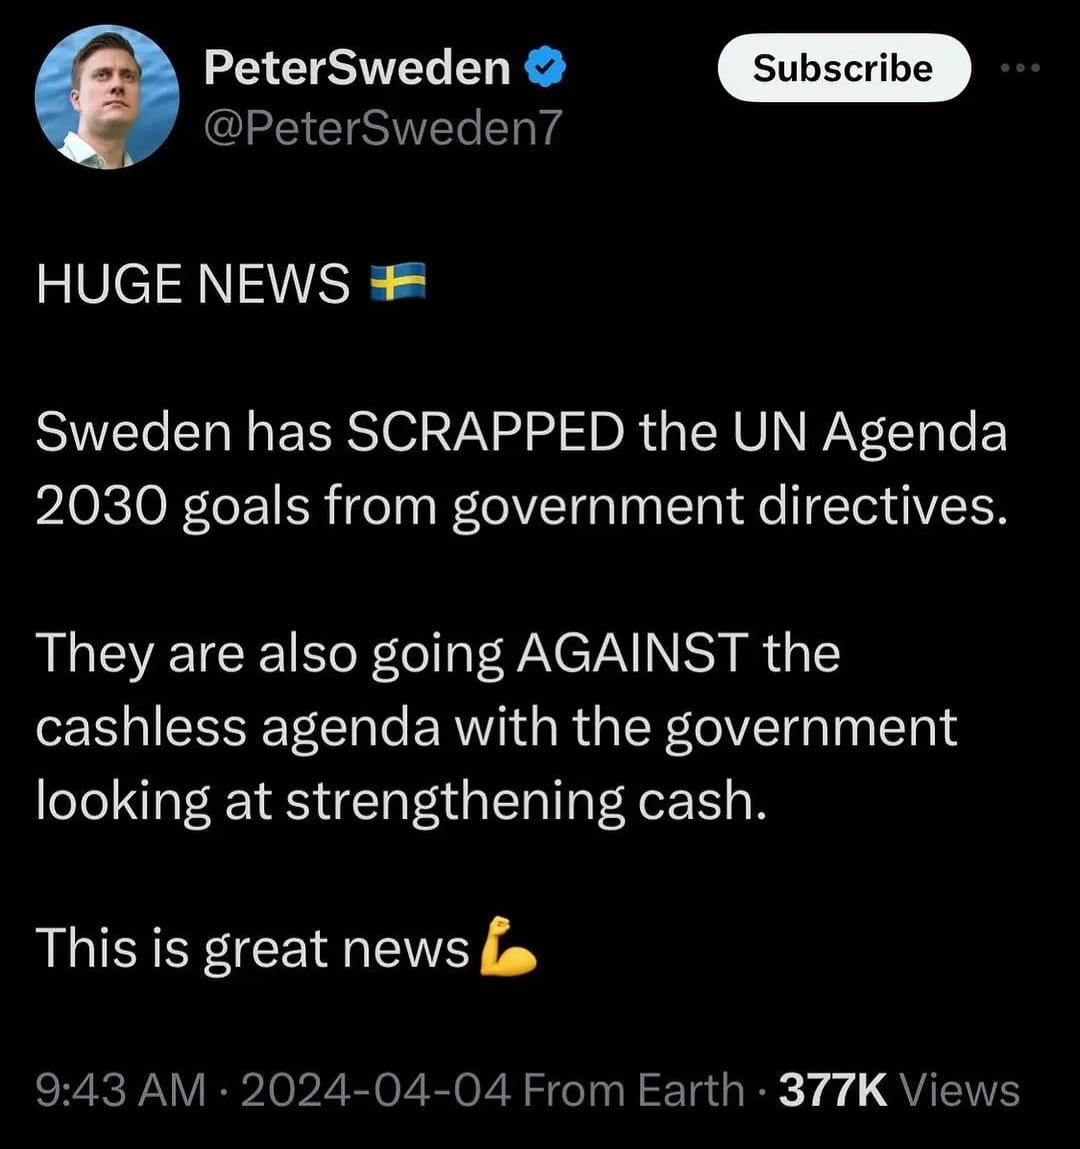 #Sweden #UN #Agenda2030 #CashlessAgenda